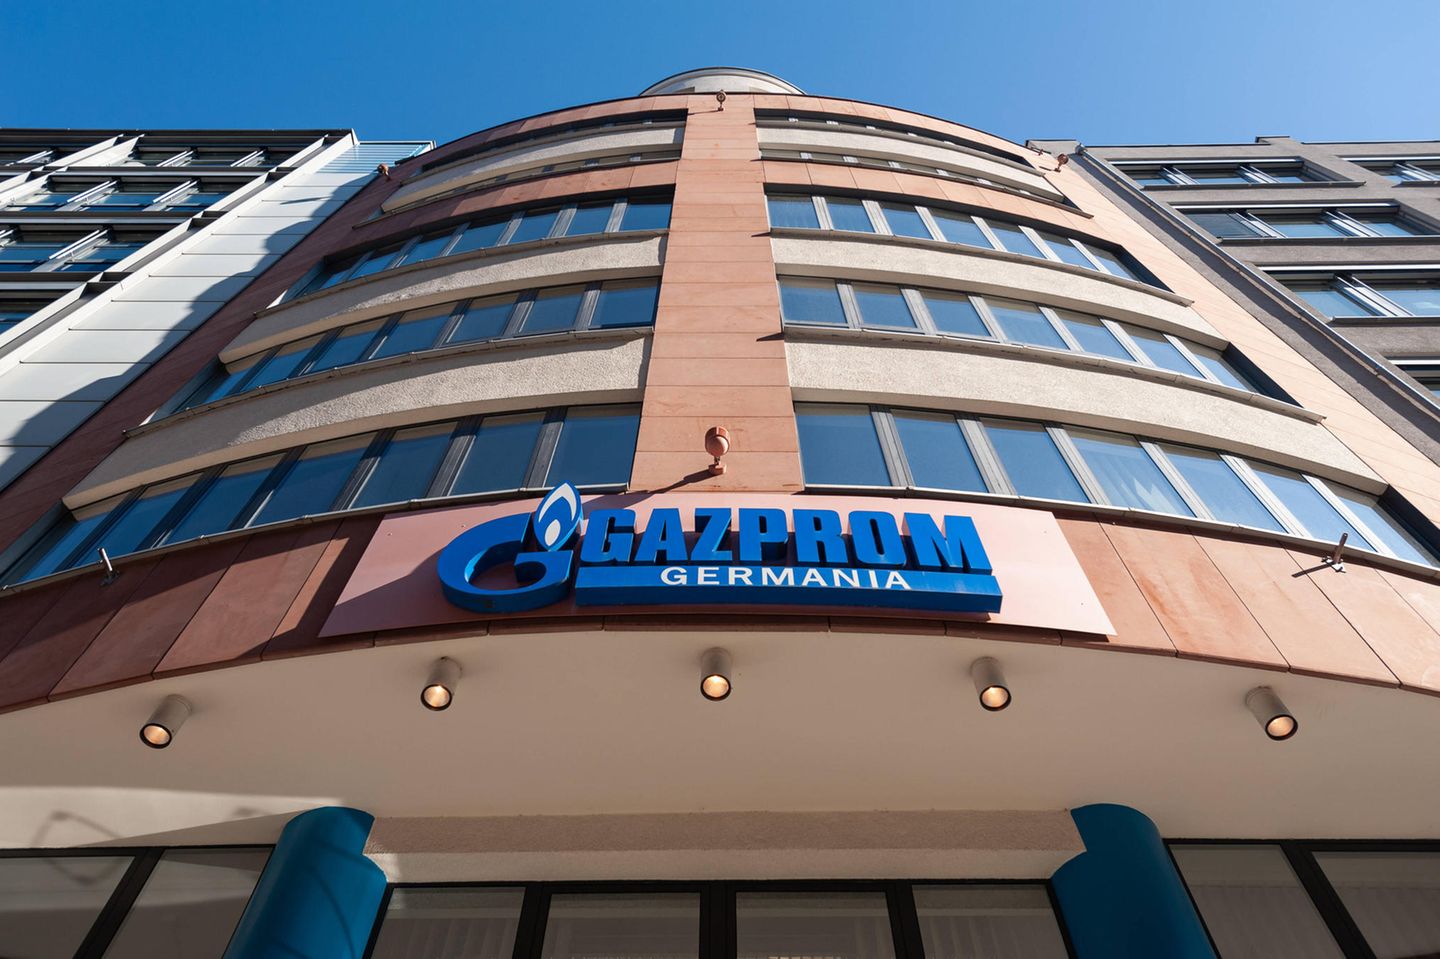 Gazprom Germania betreibt in Deutschland kritische Infrastruktur.